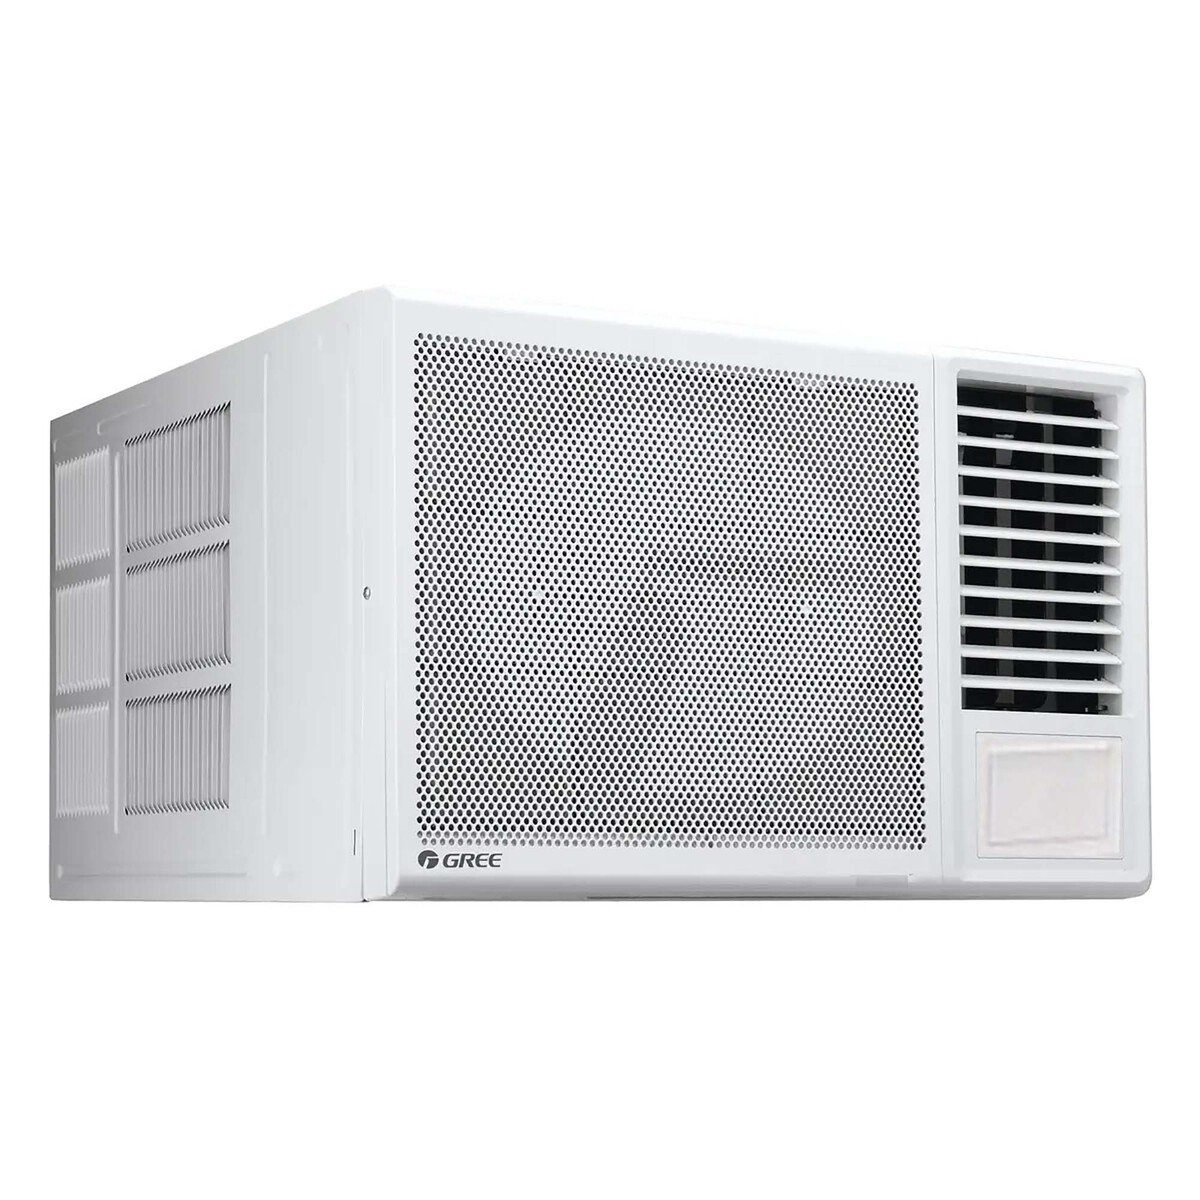 Gree Window Air Conditioner TURBO-P18C3 1.5Ton, Piston Compressor, White